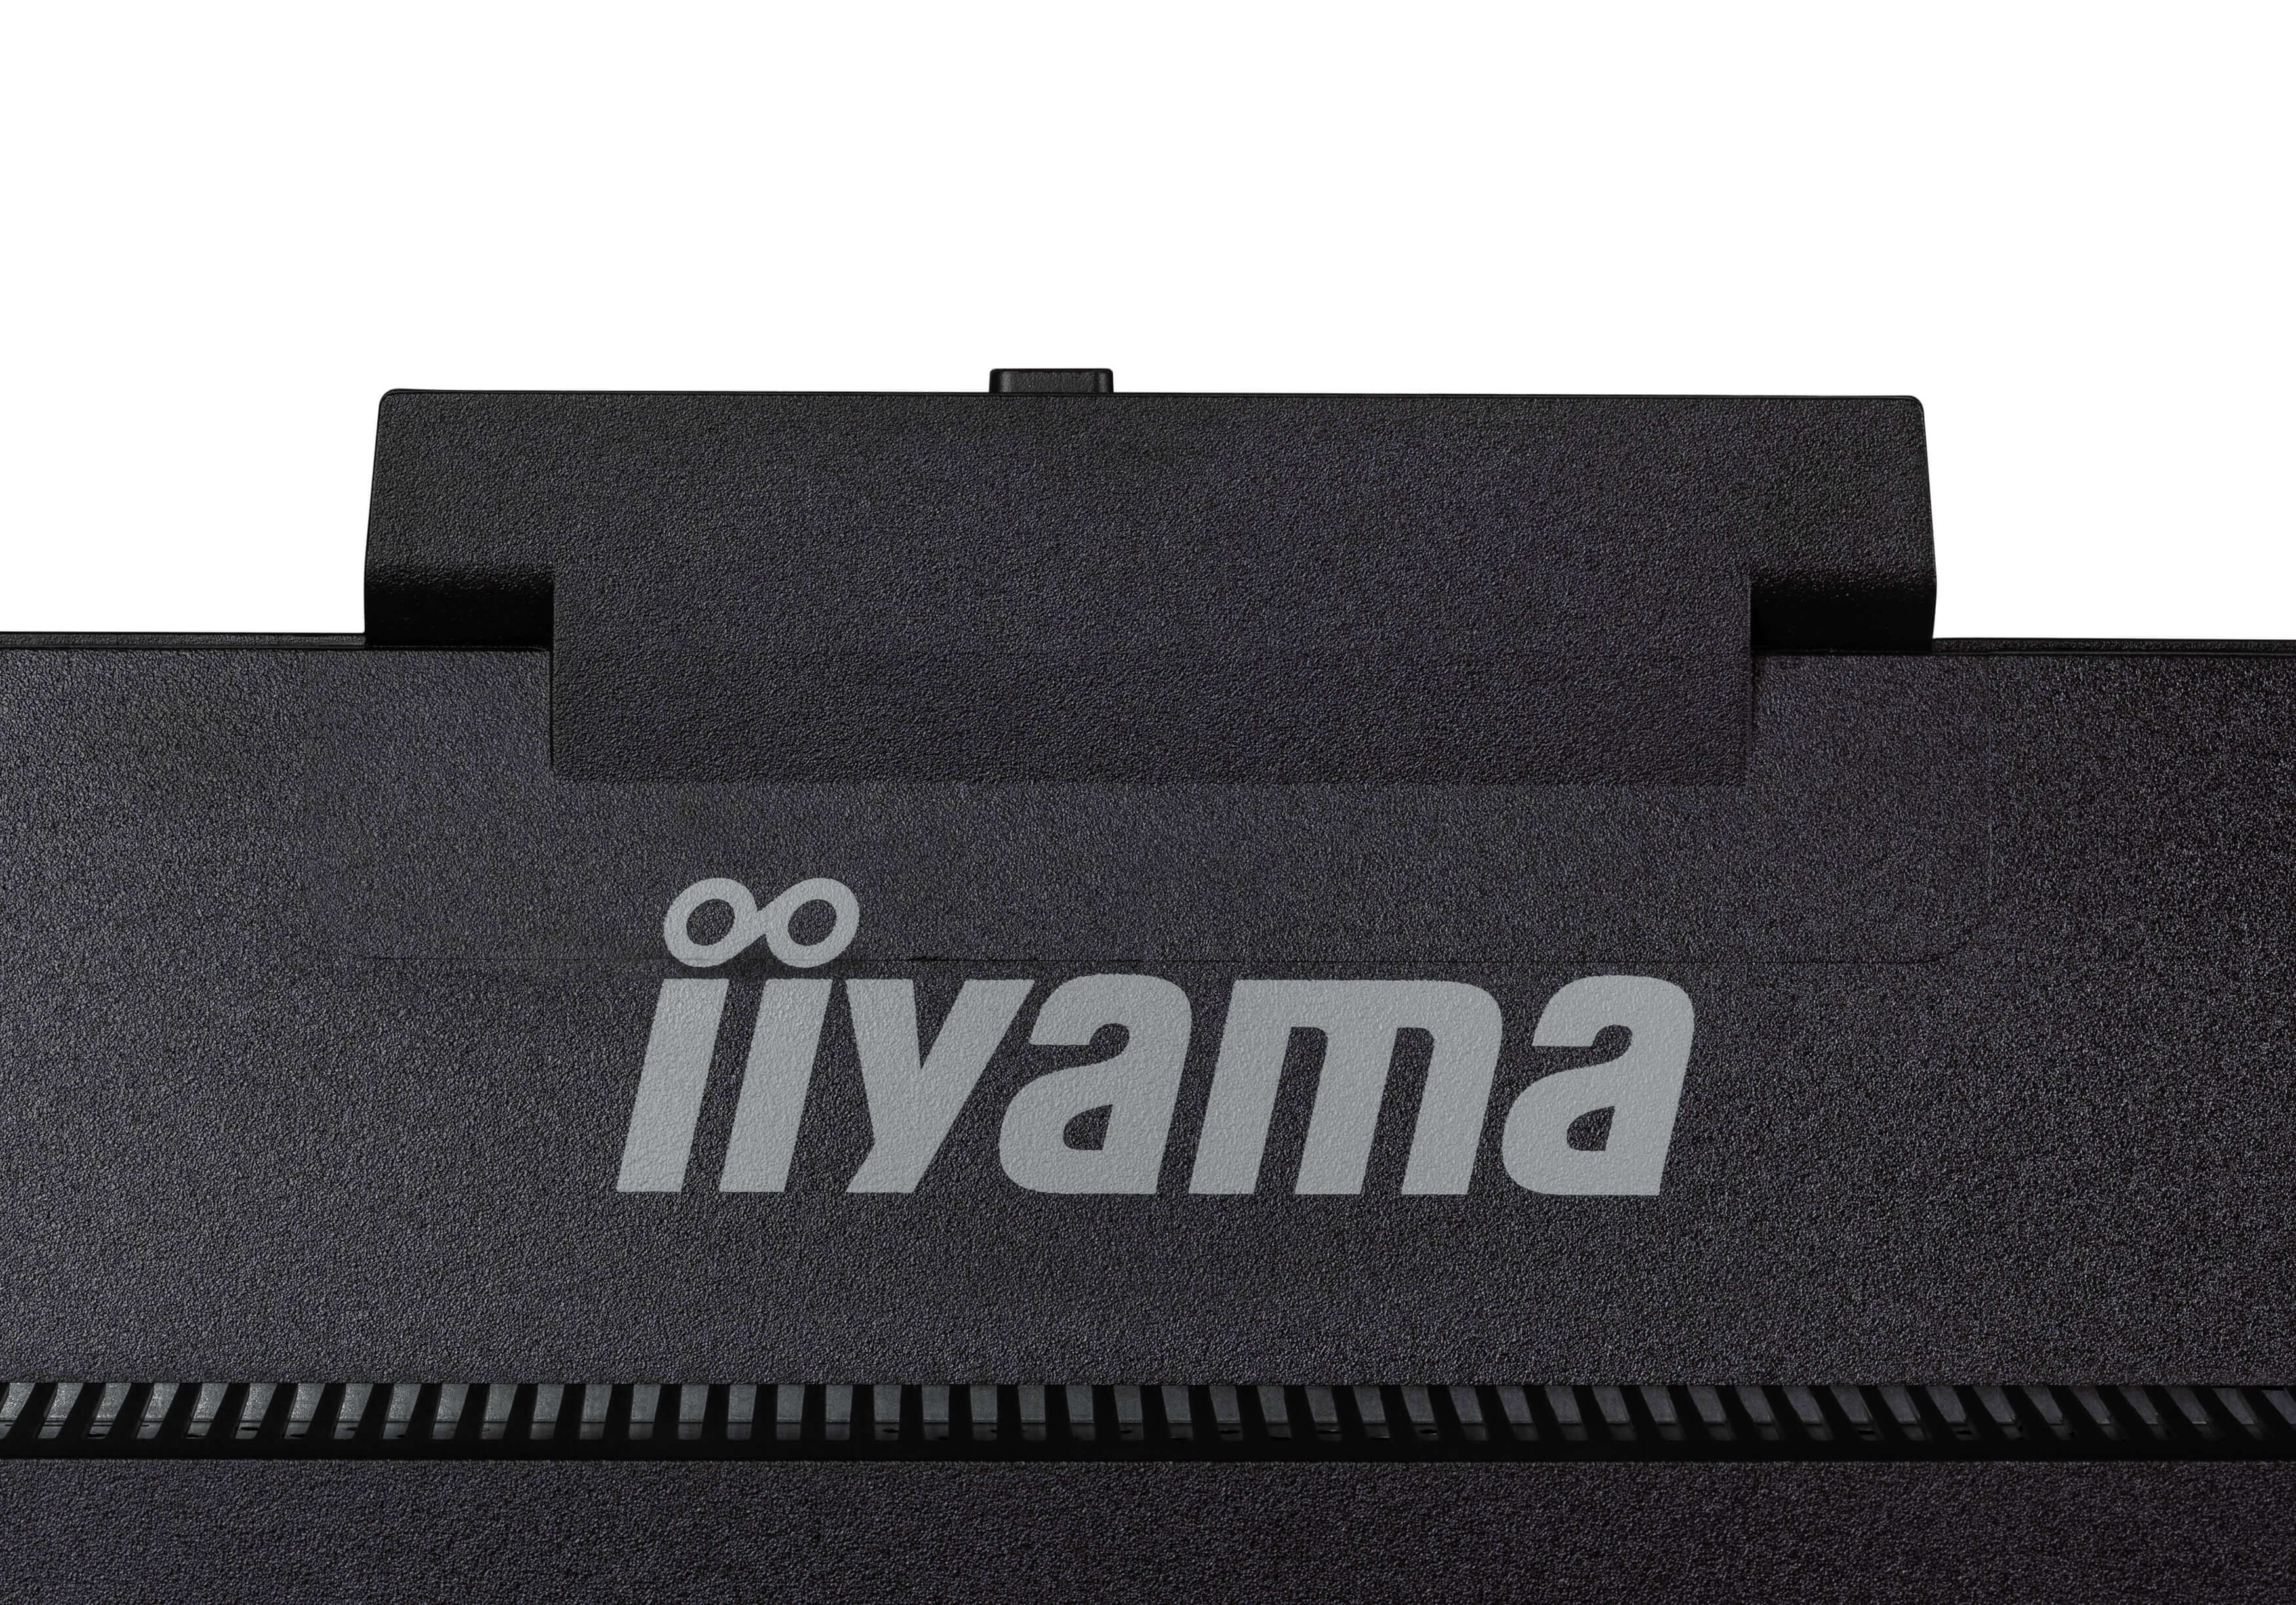 iiyama ProLite/ XUB2490HSUH-B1/ 23, 8"/ IPS/ FHD/ 100Hz/ 4ms/ Black/ 3R 